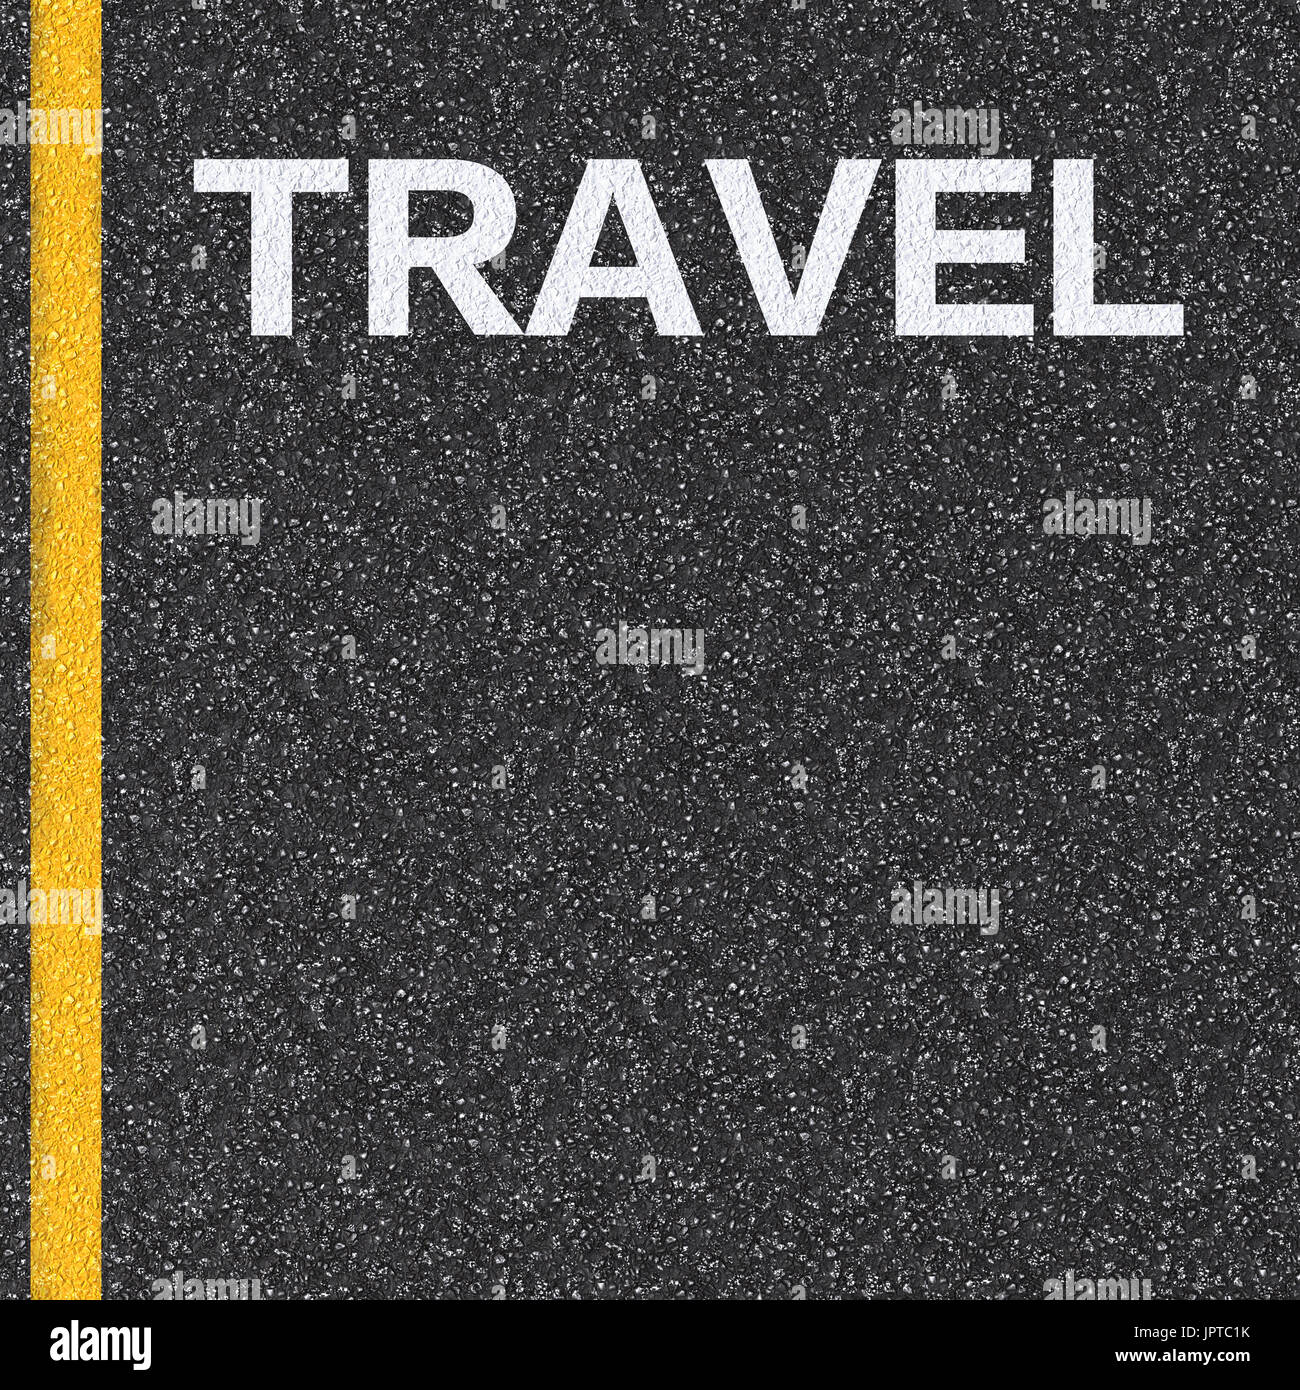 Concept de voyage avec le texte sur la route d'asphalte Banque D'Images